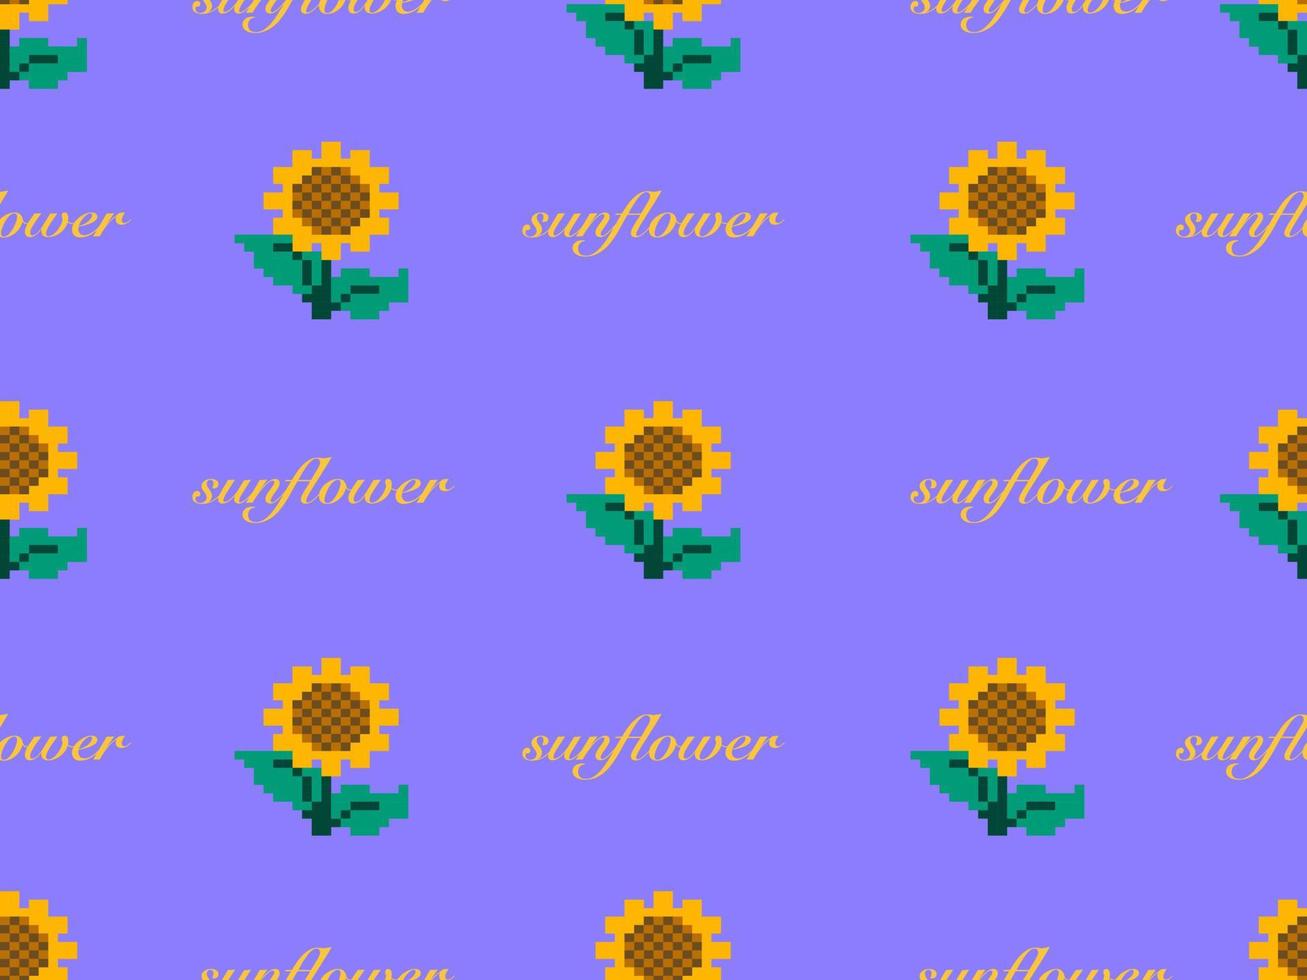 nahtloses muster der sonnenblumenzeichentrickfigur auf purpurrotem hintergrund. pixelart vektor